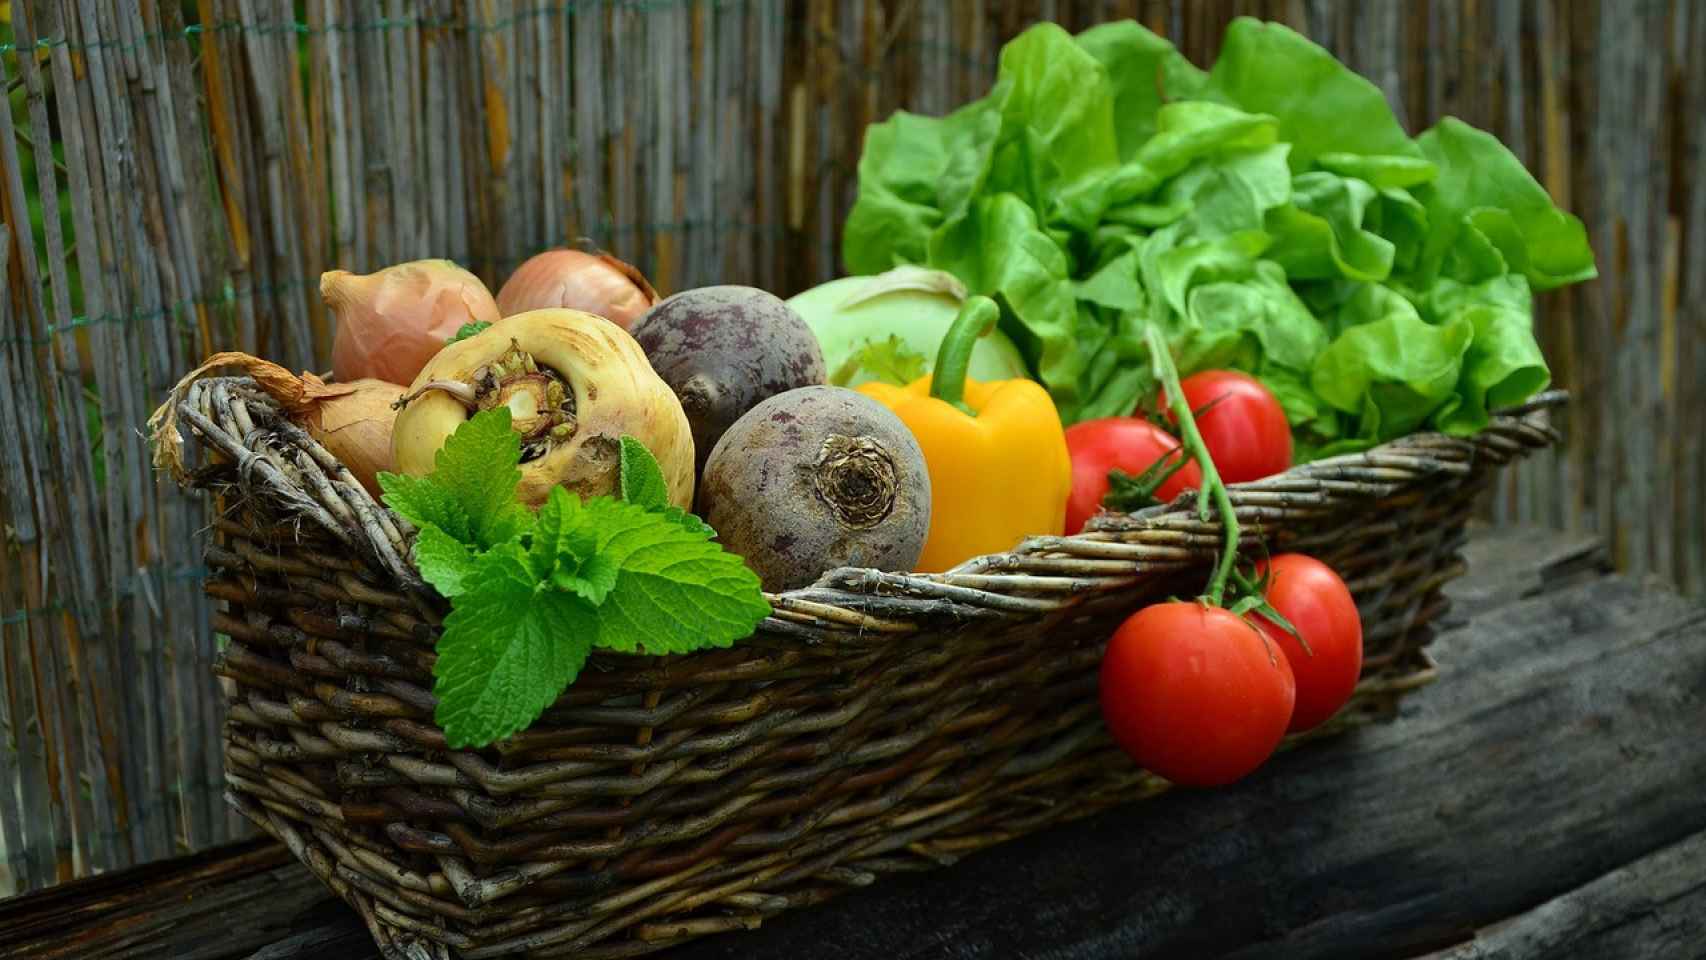 oxalatos,-el-peligro-oculto-de-la-“dieta-sana”:-el-aviso-sobre-frutas-y-verduras-de-los-expertos-en-espana